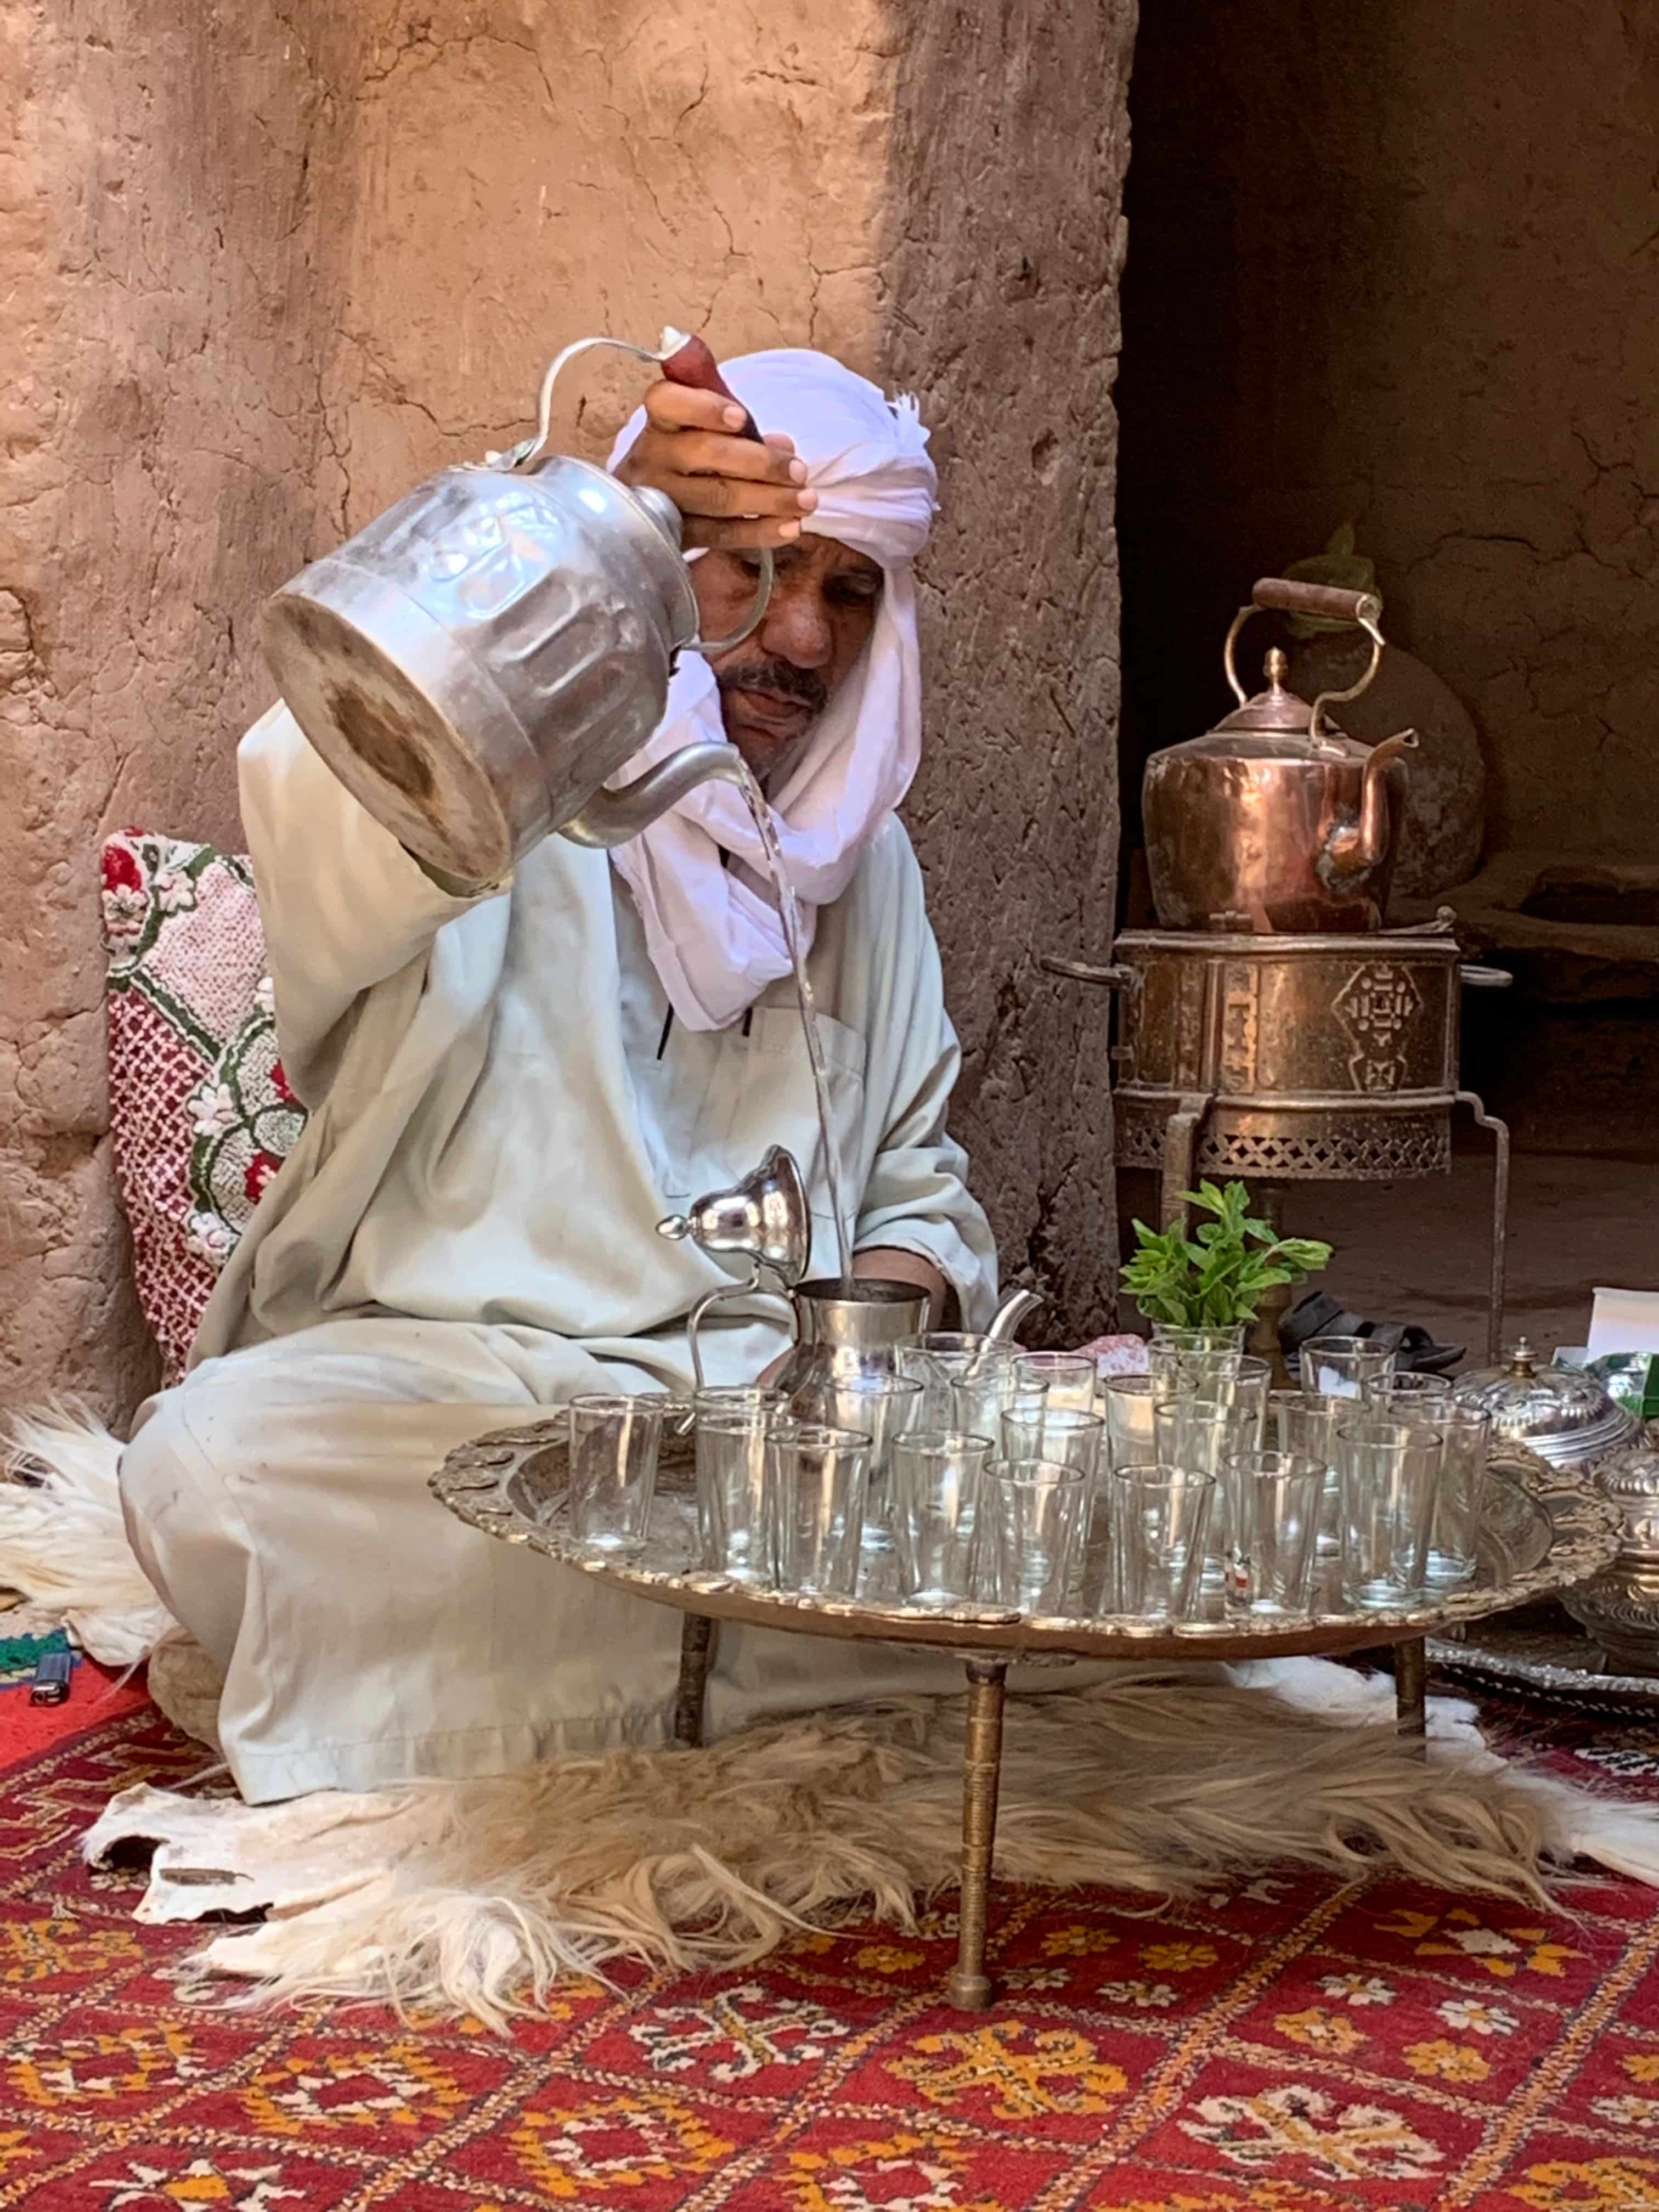 Moroccain tea ceremony